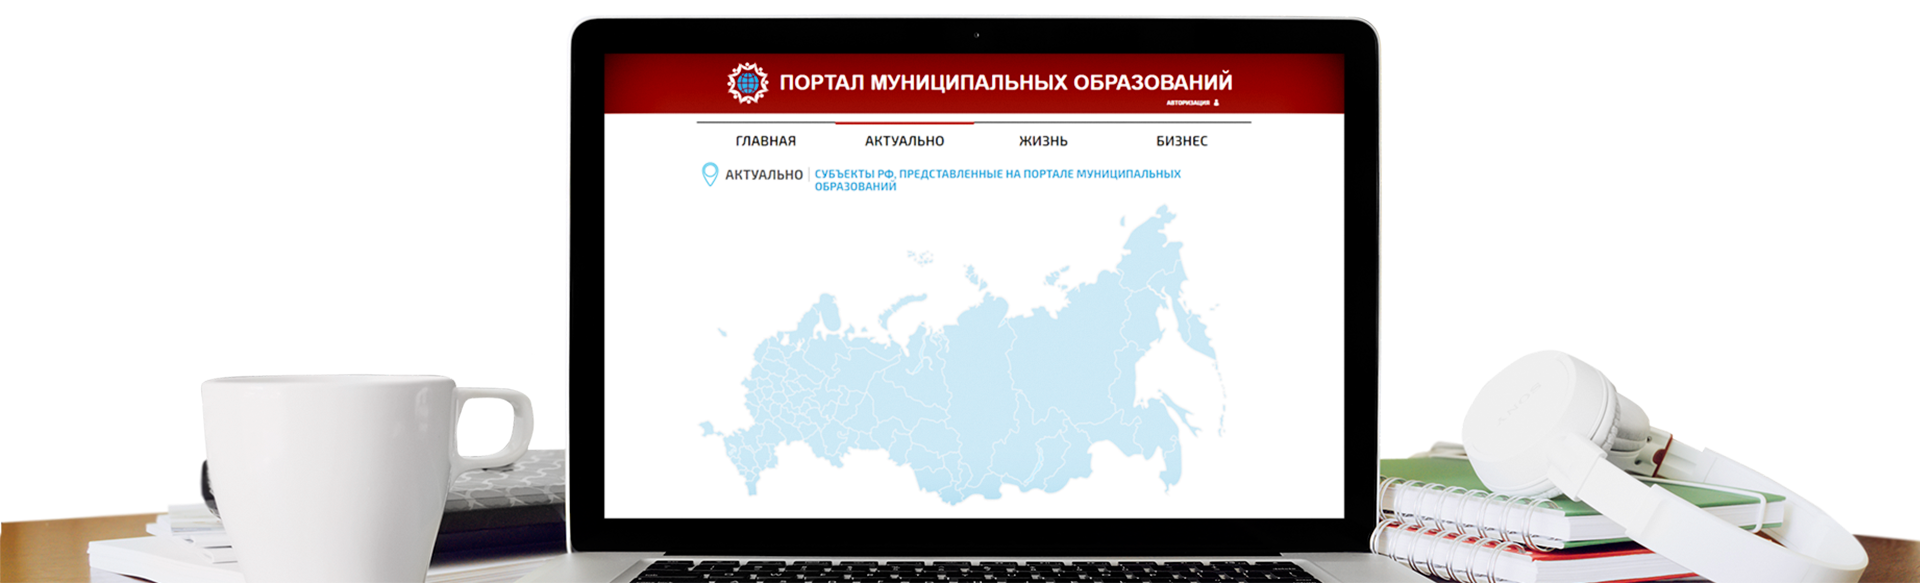 Интерактивная карта субъектов РФ